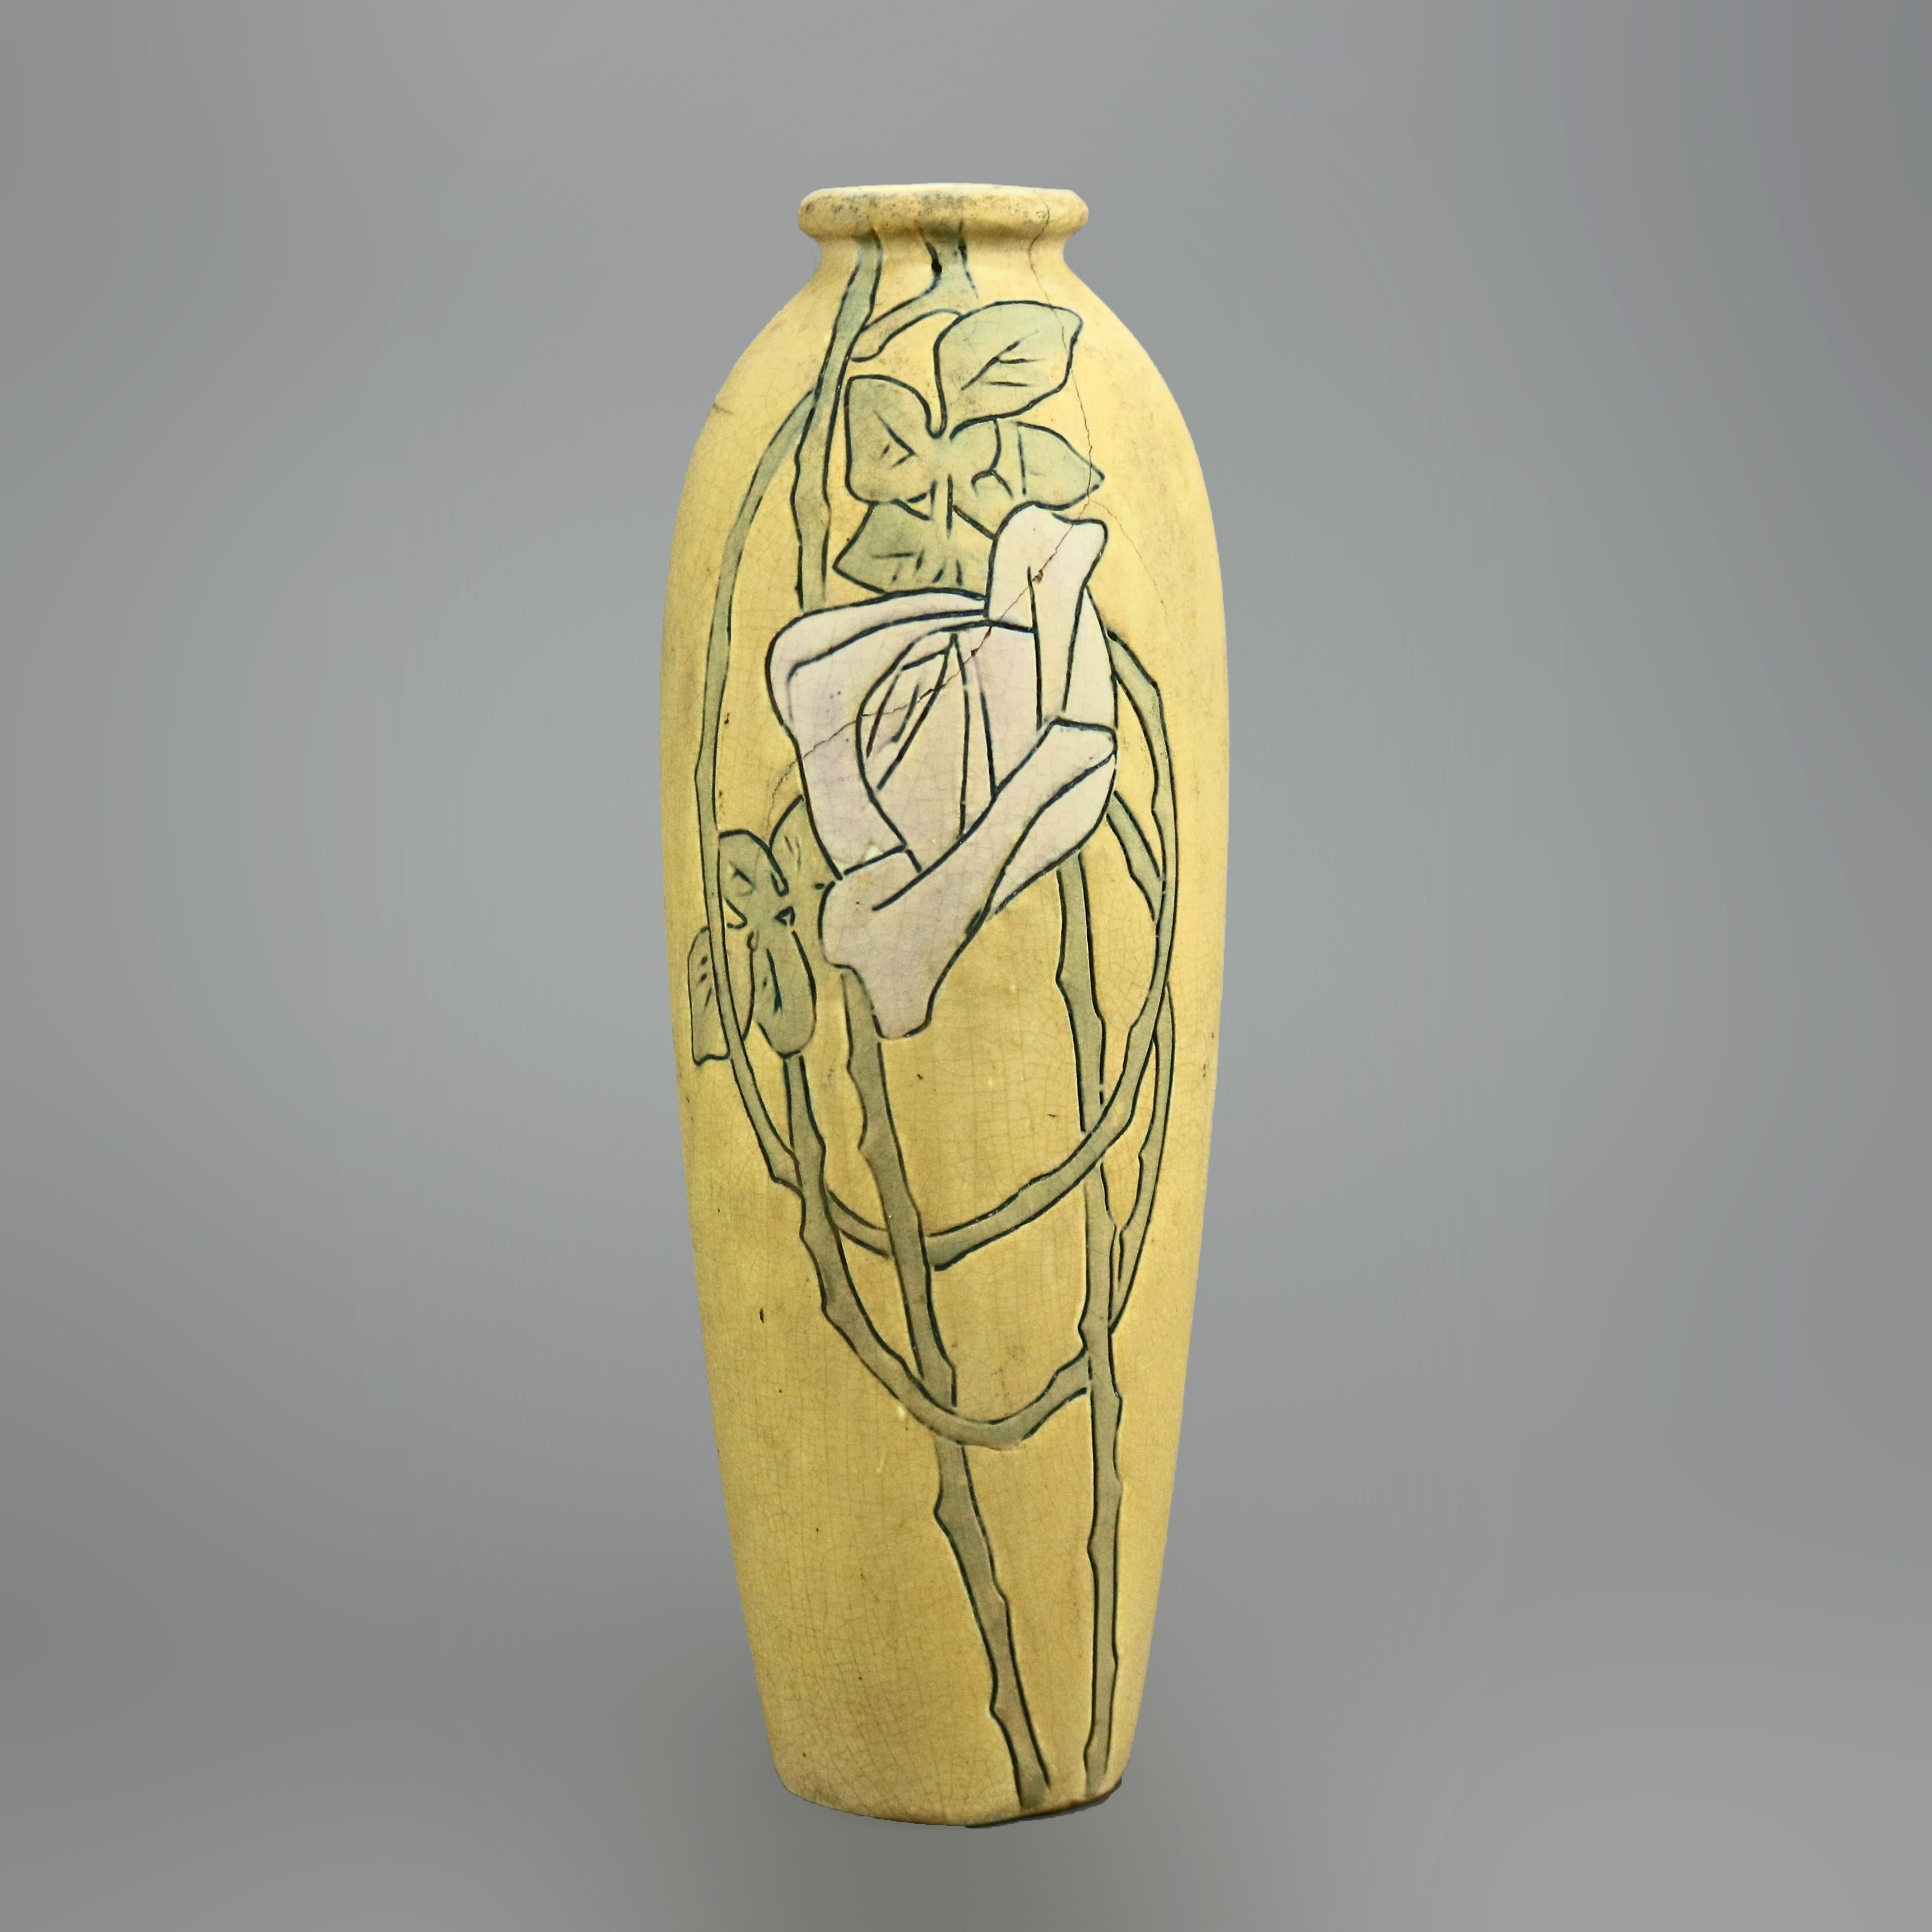 Un vase Arts and Crafts par Weller offre une construction en poterie d'art avec une fleur stylisée incisée, une glaçure mate, un fabricant sur la base, c1920.

Mesures : 10,25''h x 3,5''l x 3,5''p.

Note sur le catalogue : Demandez les TARIFS DE